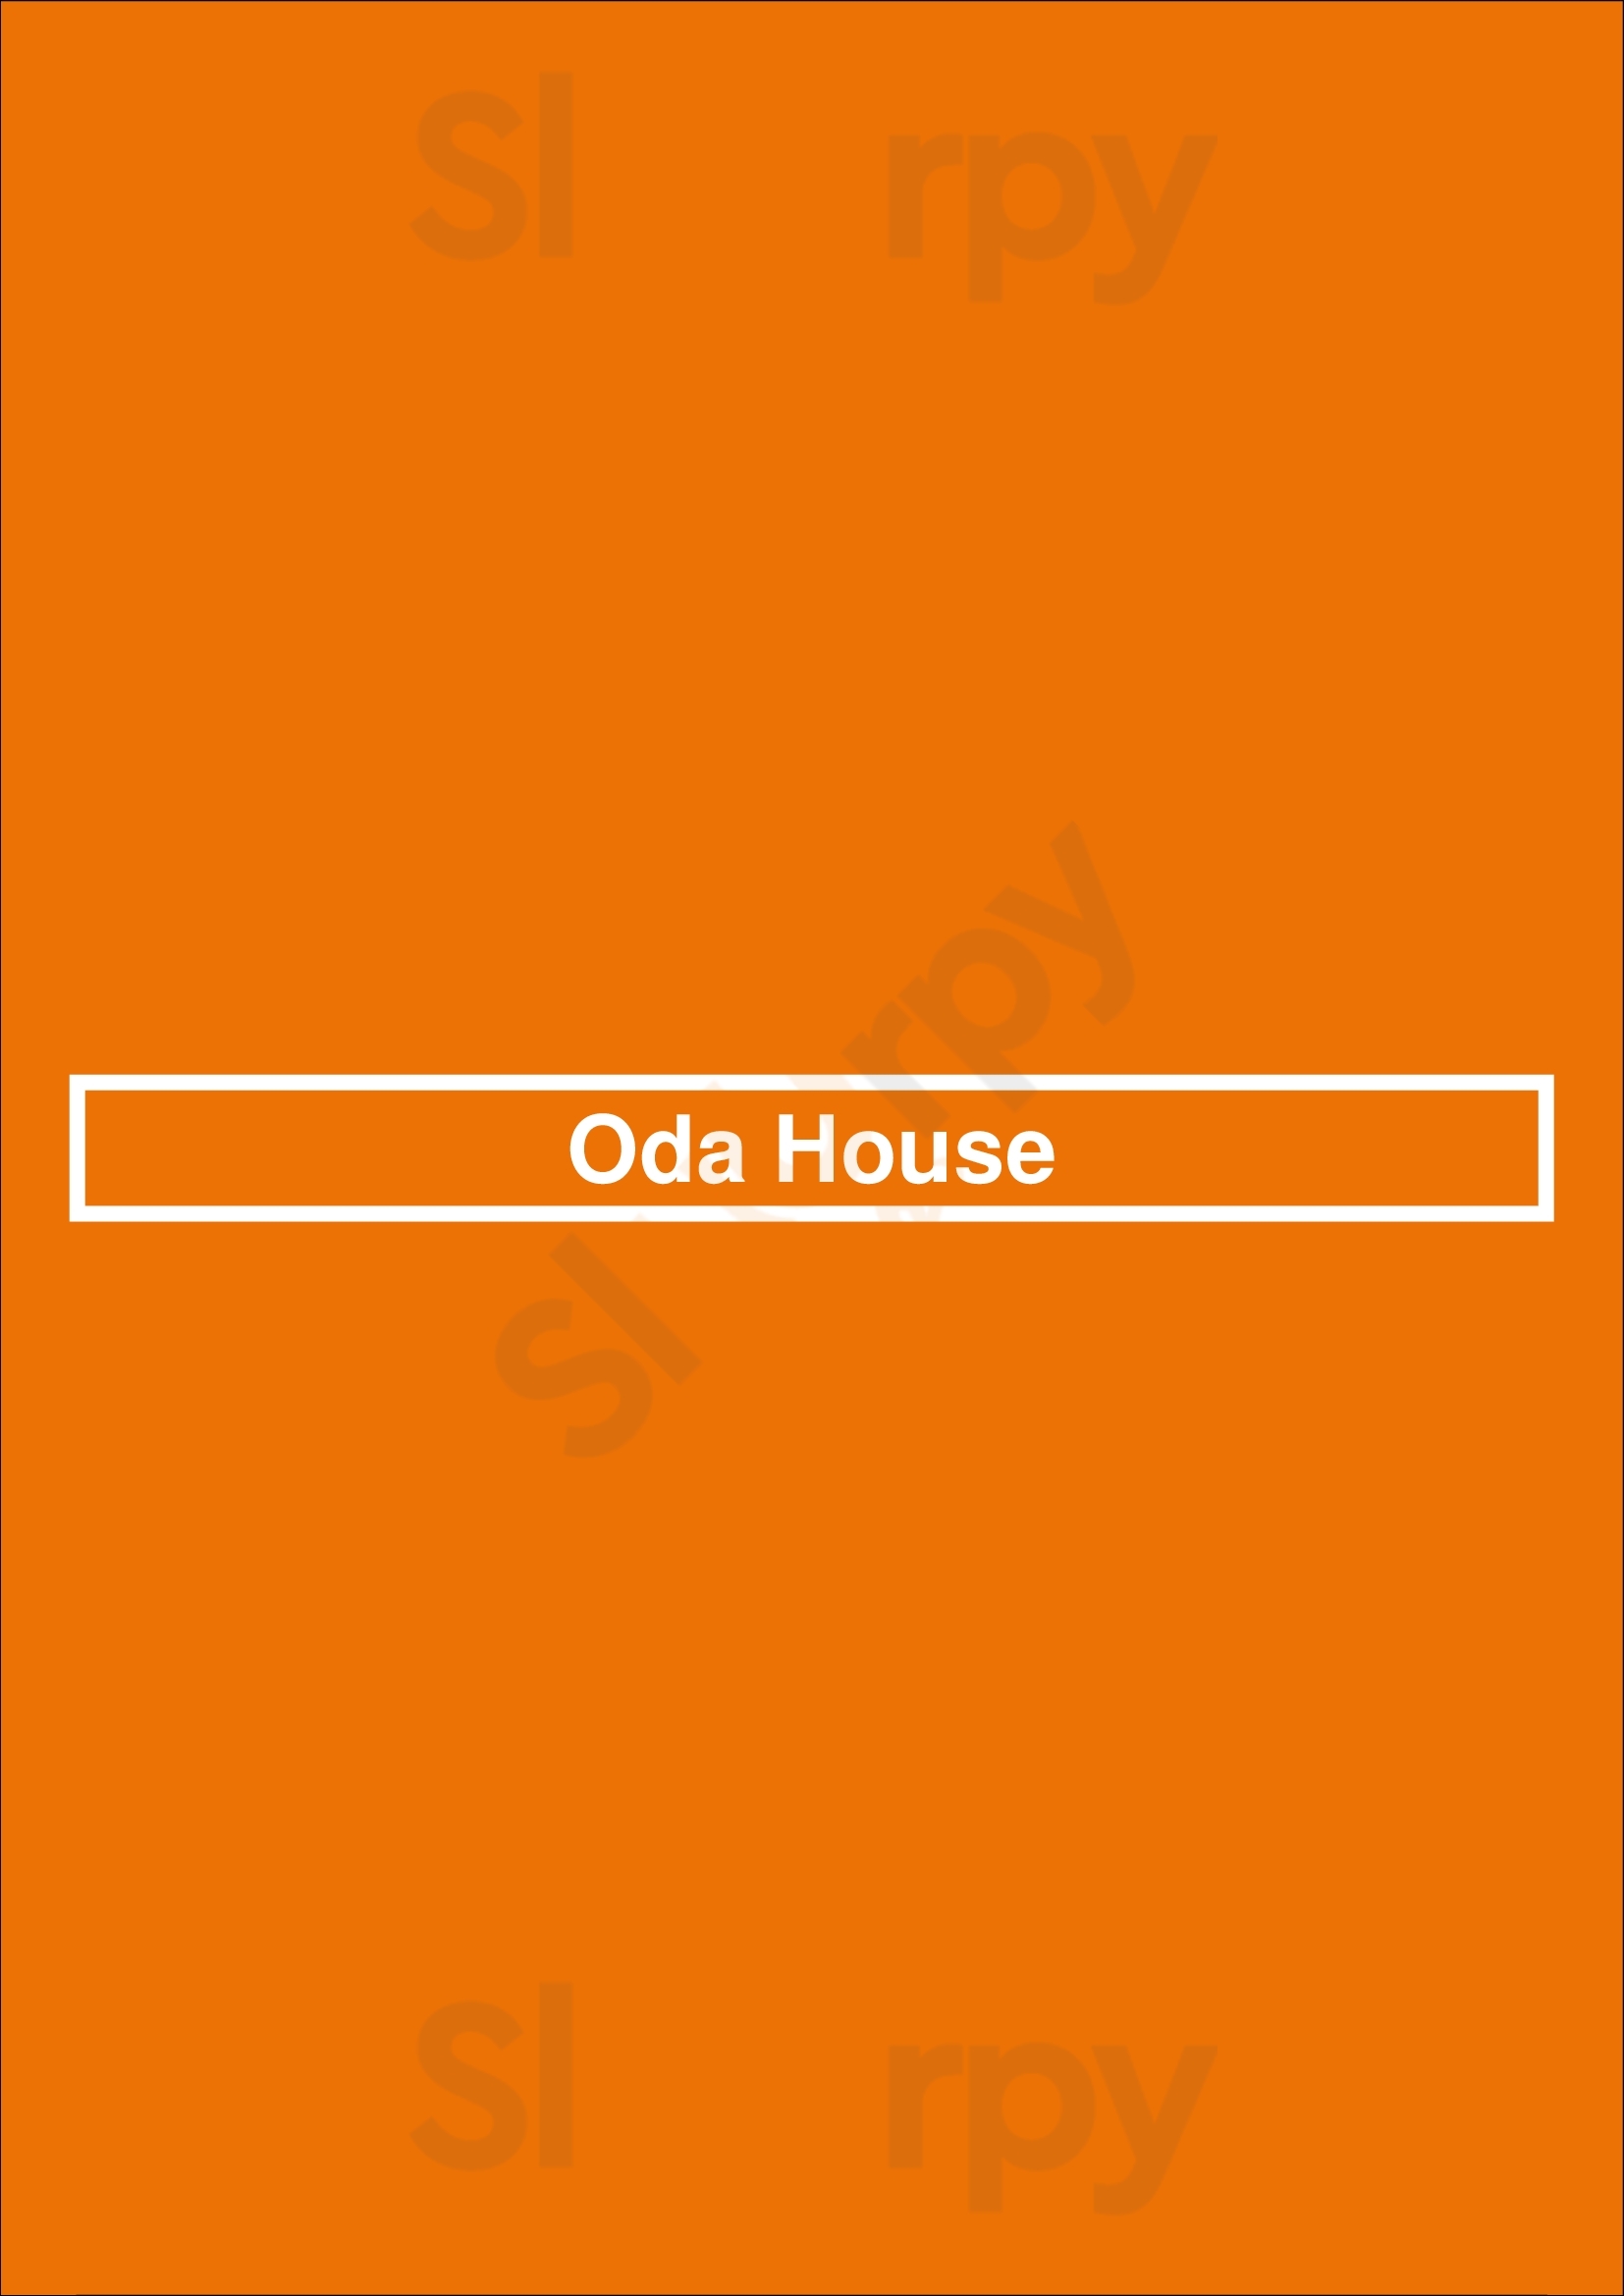 Oda House New York City Menu - 1